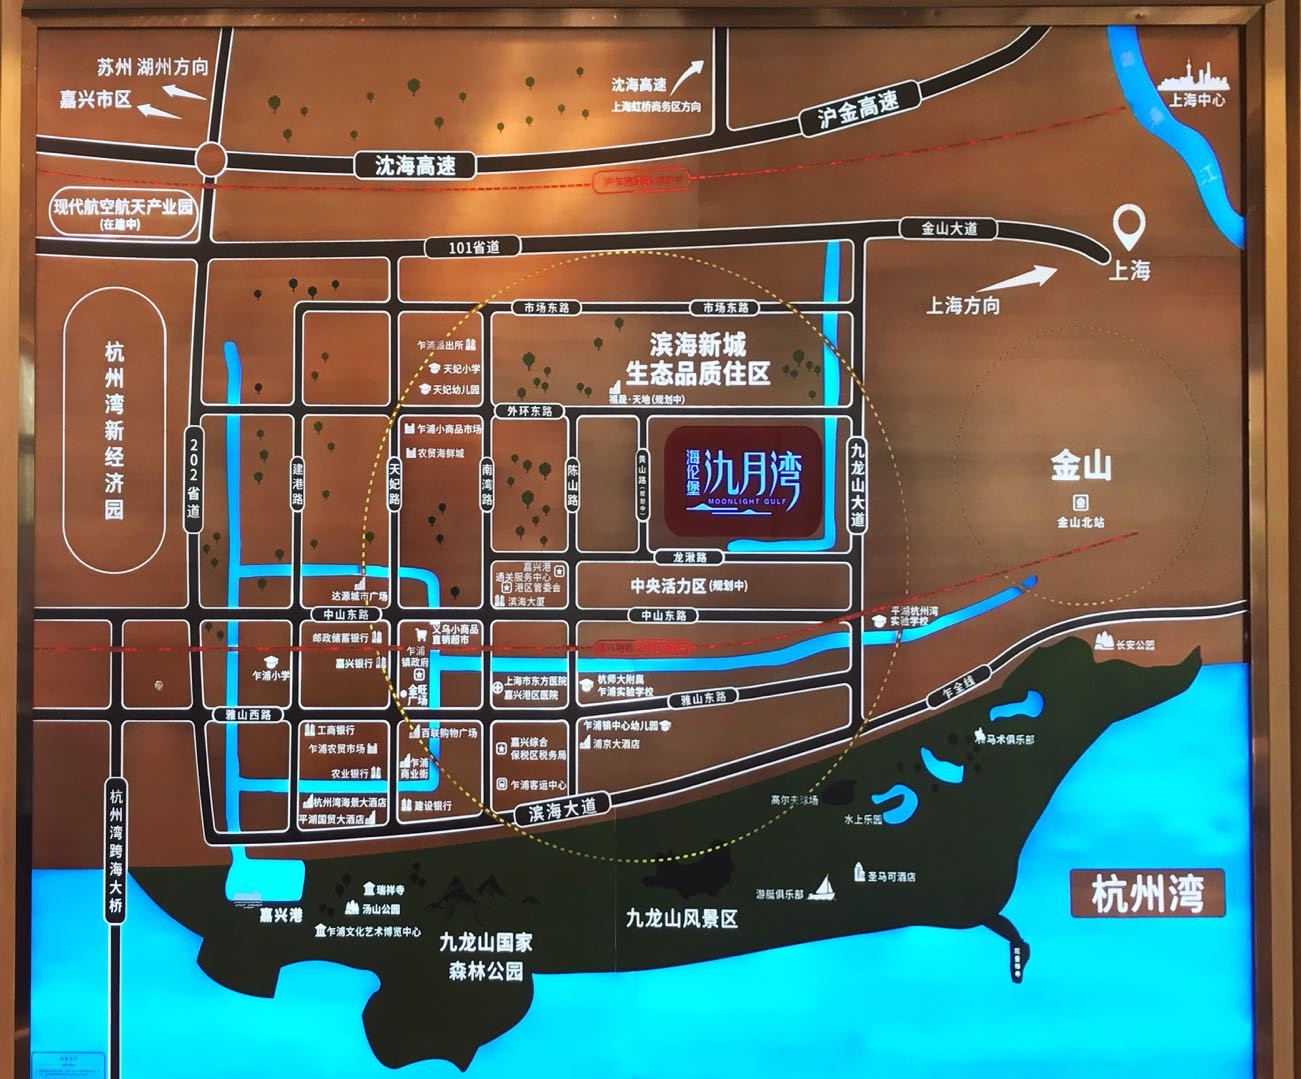 海伦堡氿月湾与上海的区位位置图以及周边配套示意图